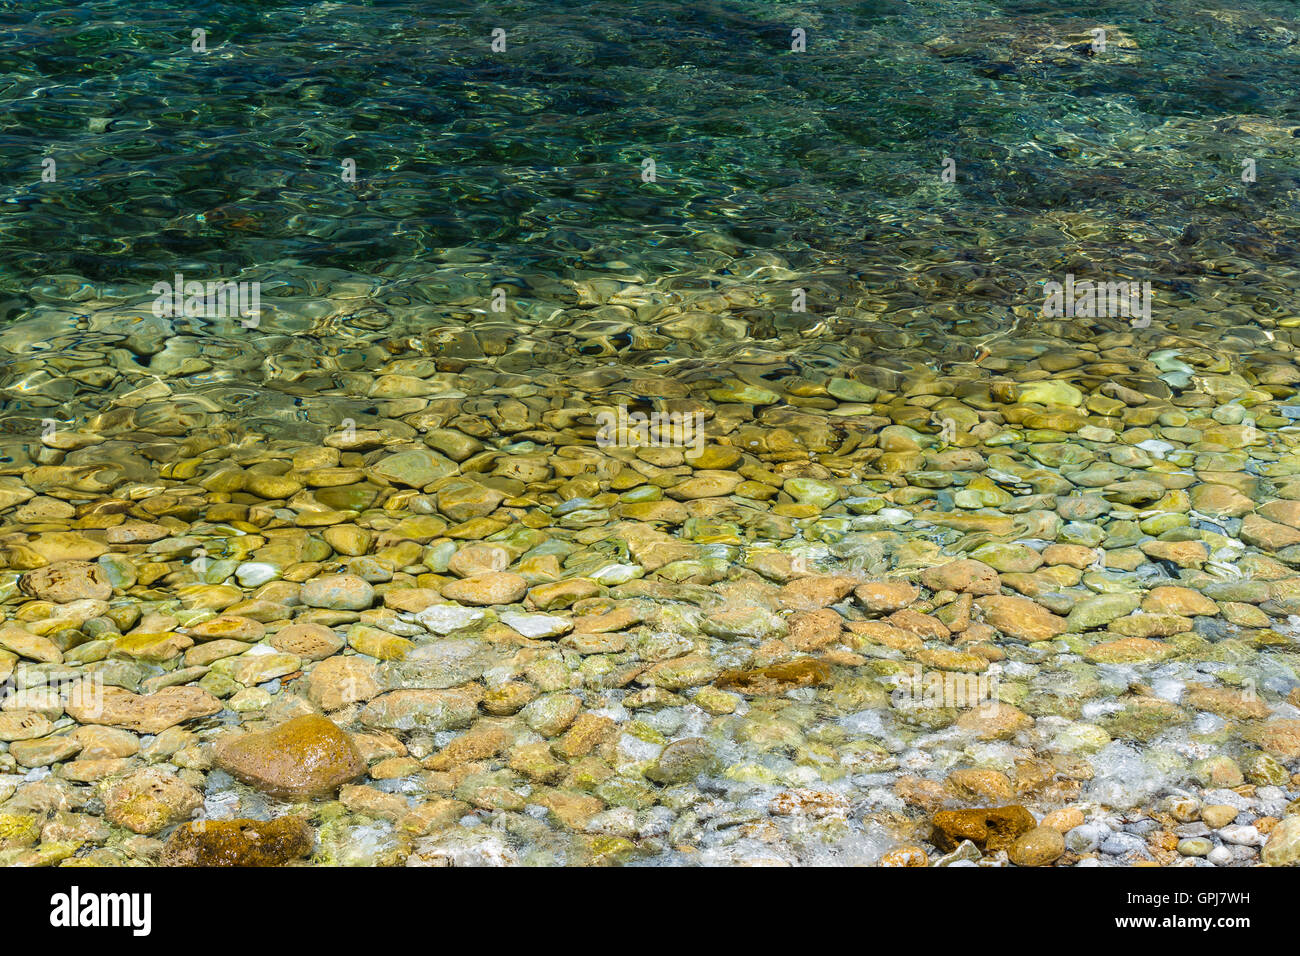 L'eau de mer et des cailloux une texture de fond naturel vert, reflétant au soleil, sélectionnez Vue avec une grande profondeur de champ Banque D'Images